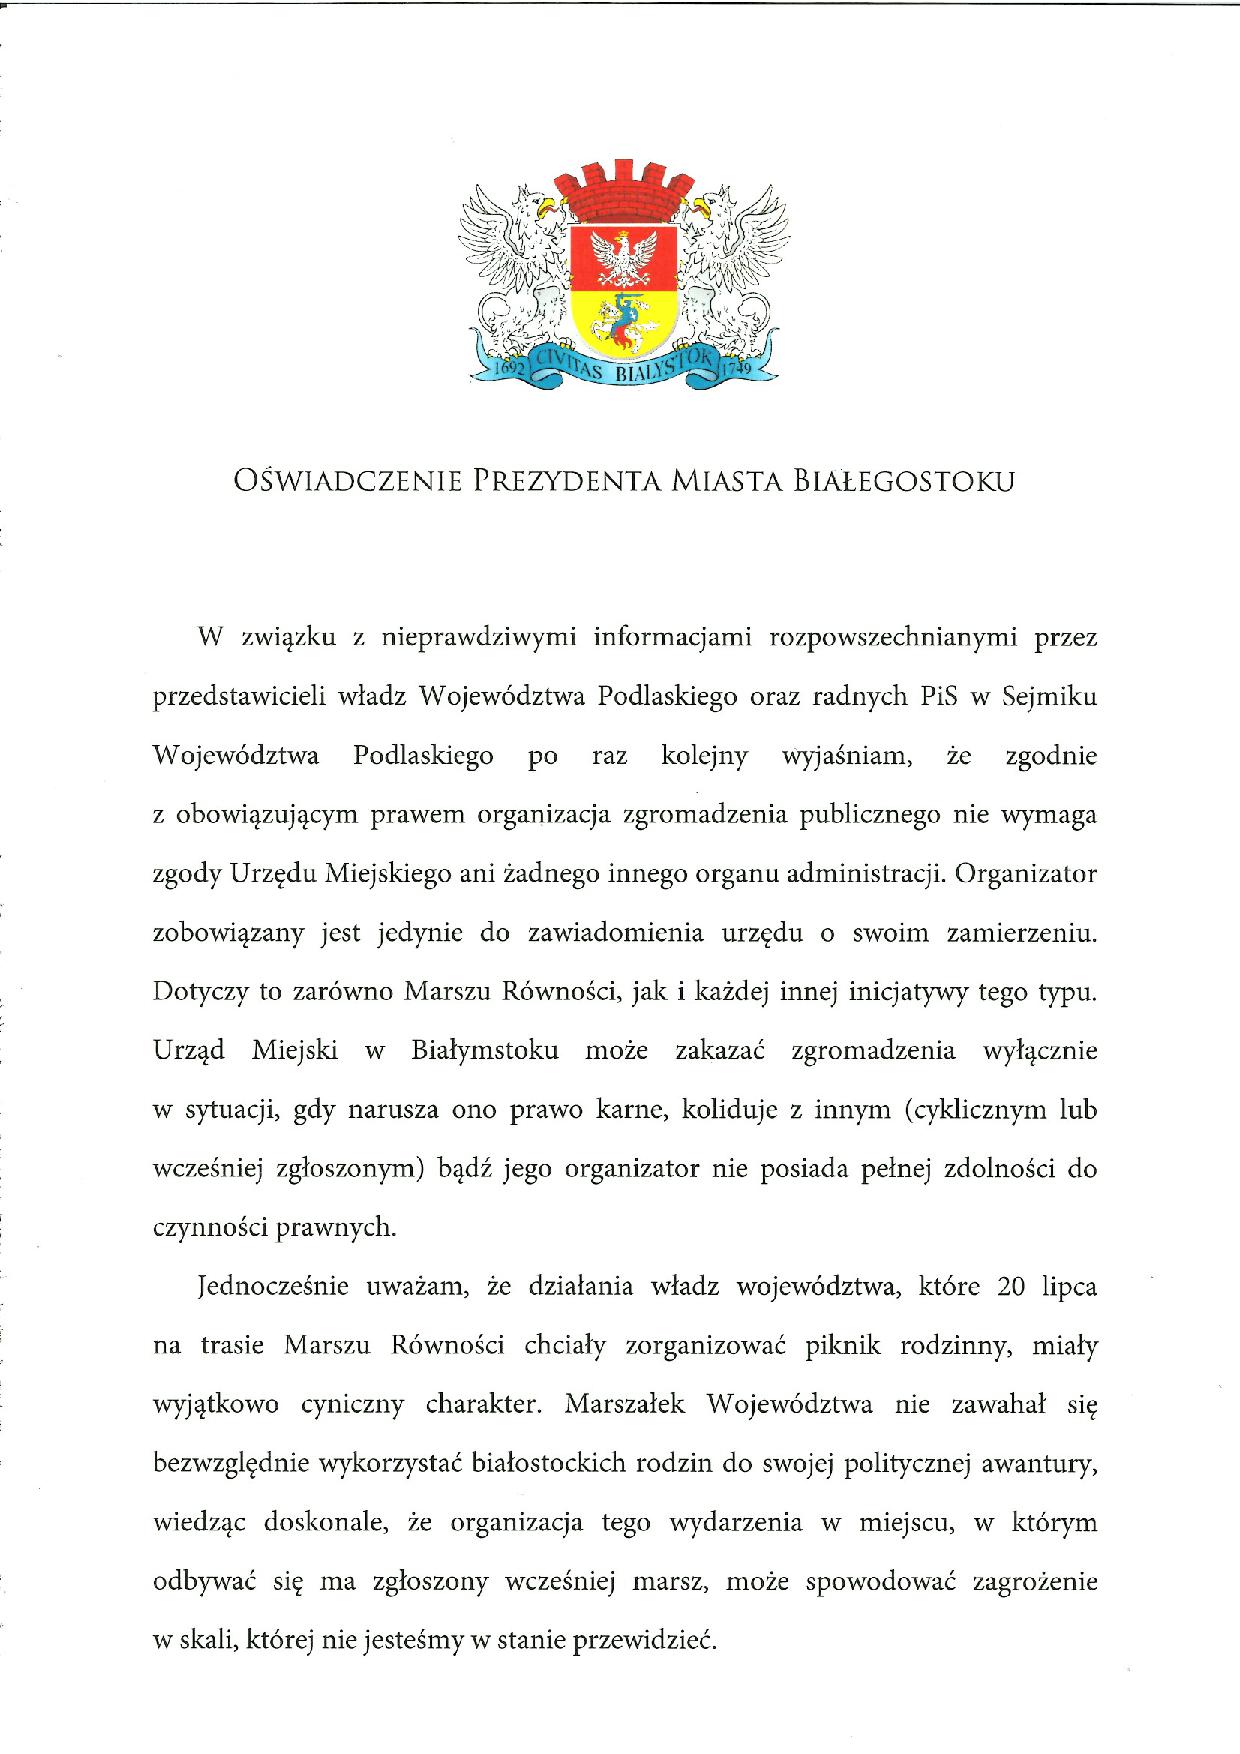 Prezydent Miasta Białegostoku wydał oświadczenie dotyczące Marszu Równości, który ma się odbyć w Białymstoku 20 lipca.